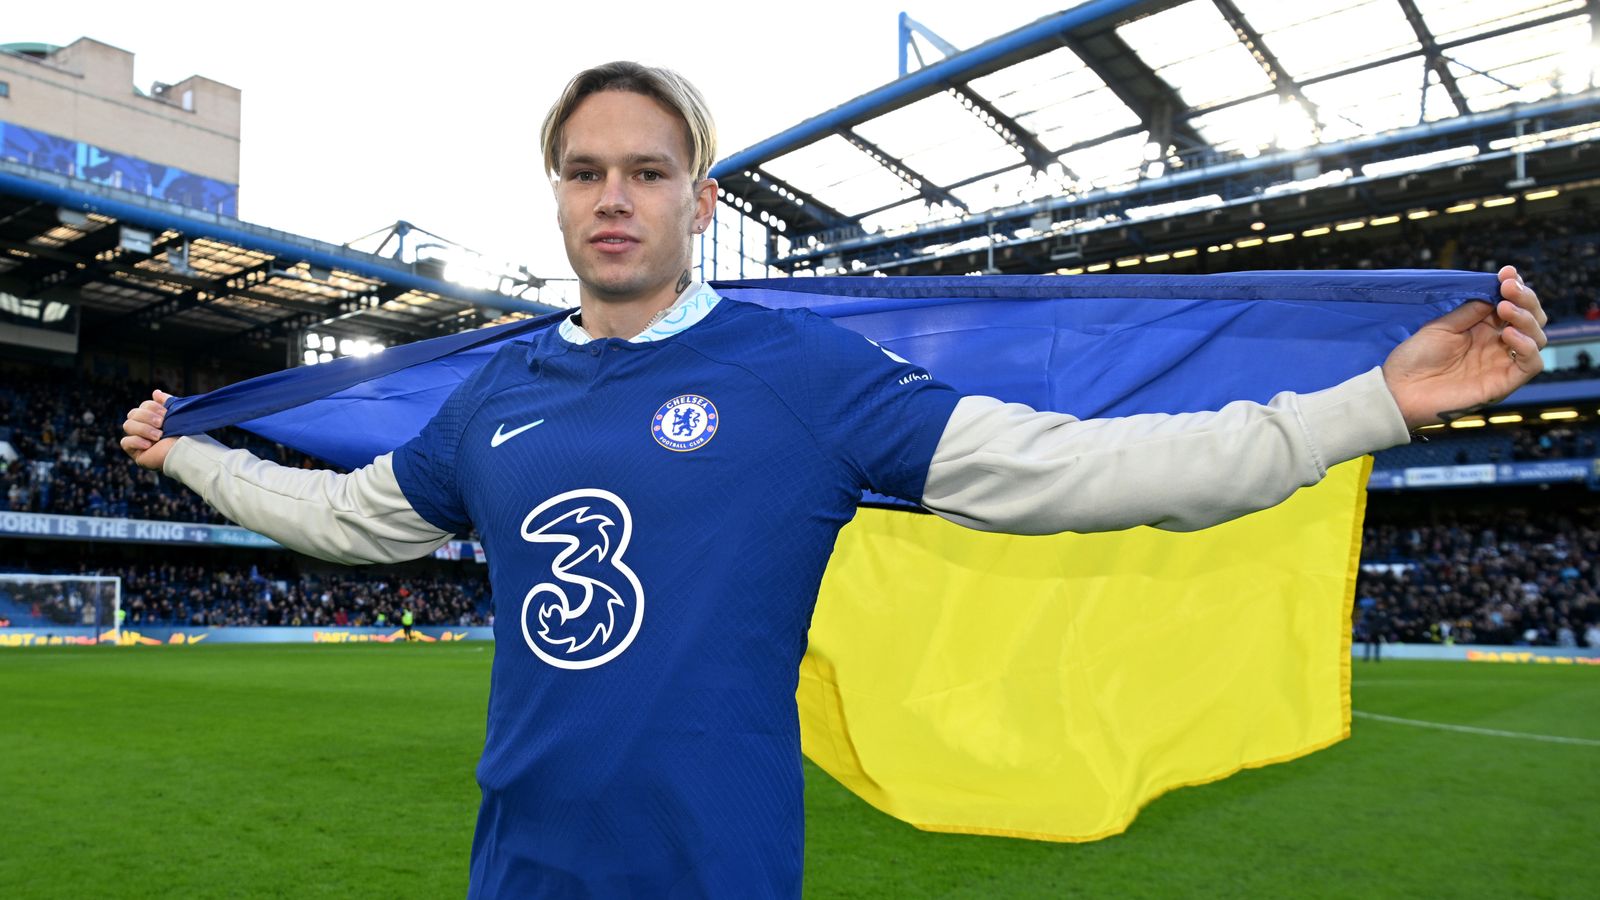 Mykhailo Mudryk: Chelsea sign winger for £88.5m from Shakhtar Donetsk | Football News | Sky Sports